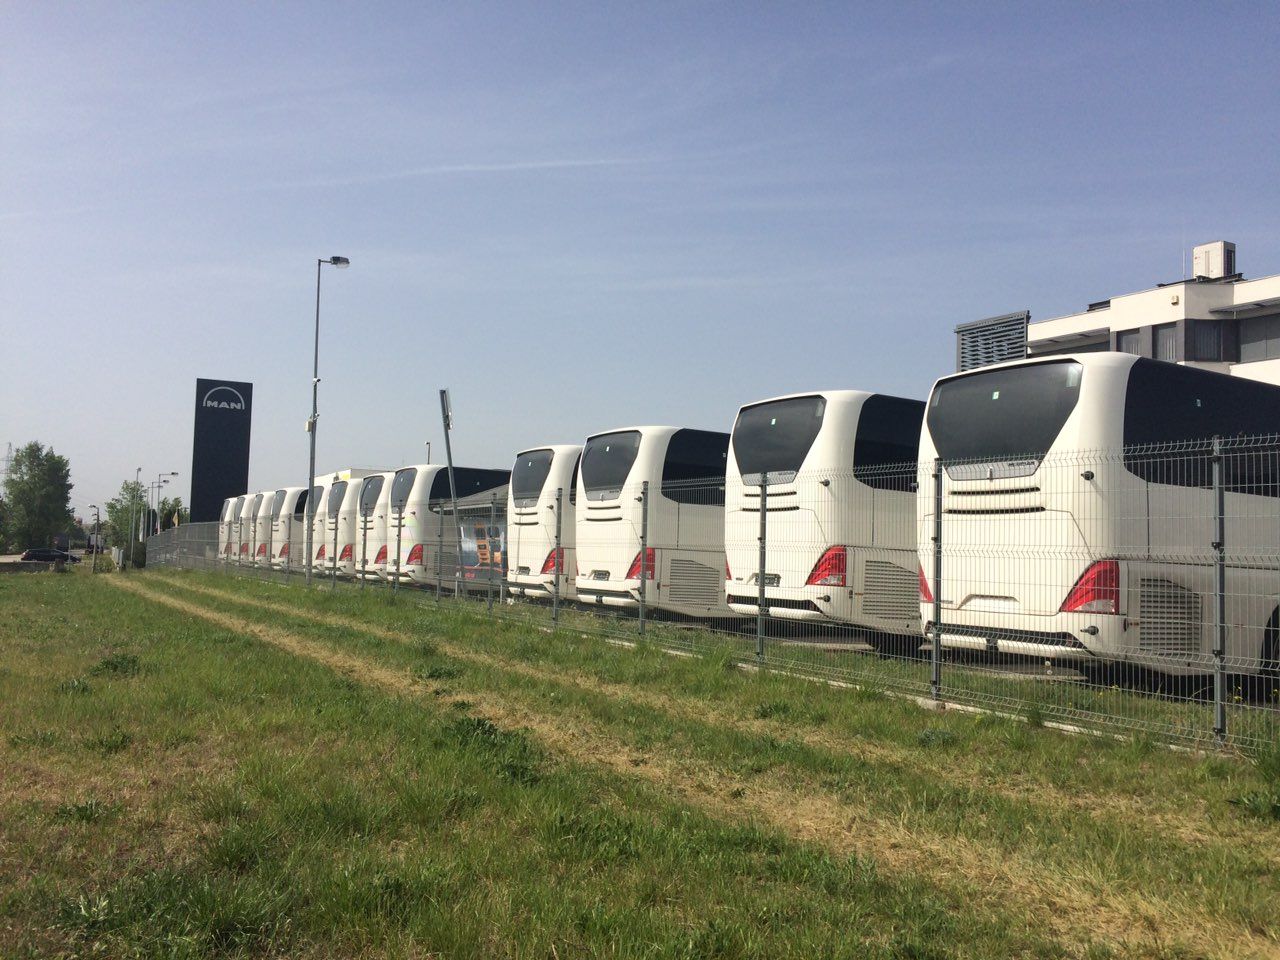 Megérkeztek a vadonatúj kéttengelyes Neoplan Tourliner távolsági autóbuszok Dunaharasztiba, a negyvenhárom új autóbusz hamarosan forgalomba átt (a csengessunk.blog felvétele)